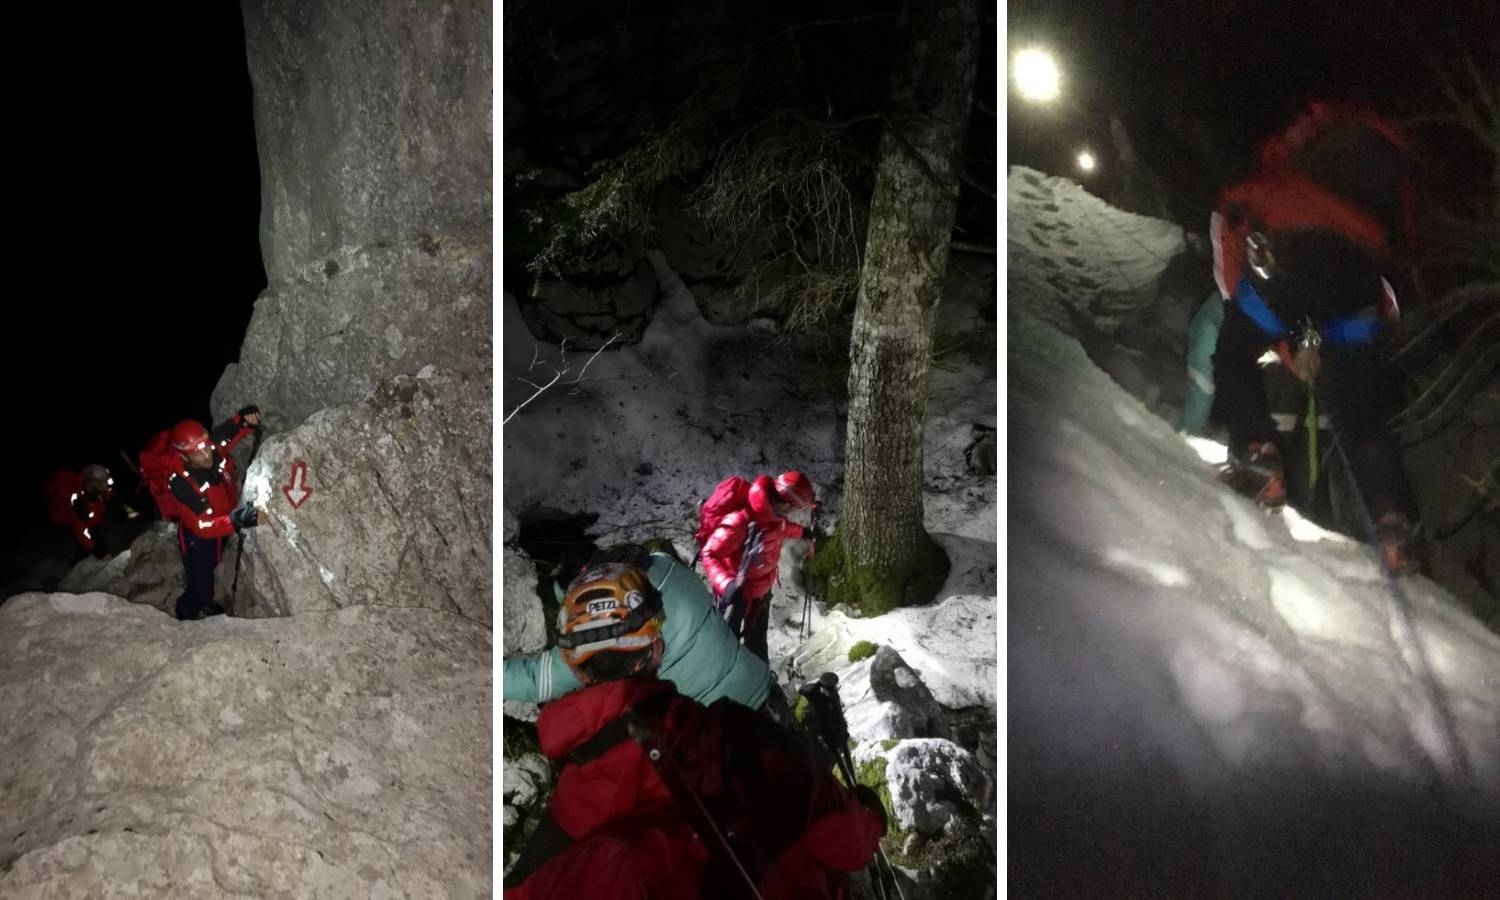 Noćno  spašavanje na Velebitu: Dvojac otišao gore bez opreme